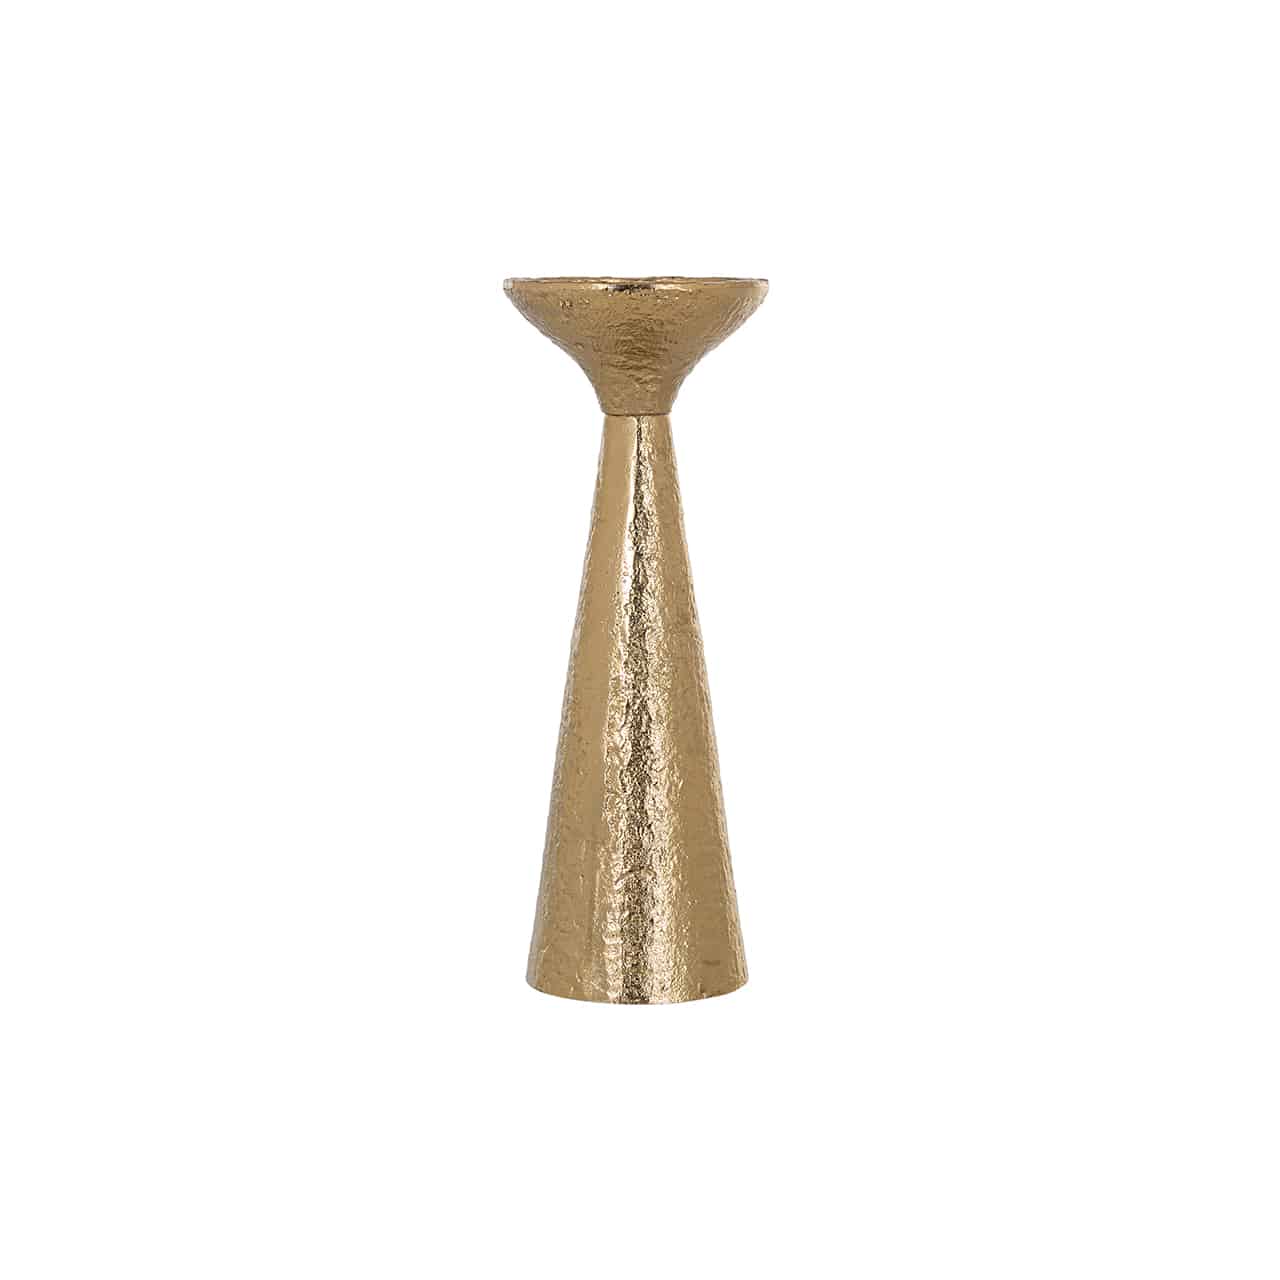 Kerzenständer Feliz klein von Richmond im Design eines, Kegels aus gehämmertem Gold auf dem ein kurzer trichterförmiger Kerzenteller sitzt.